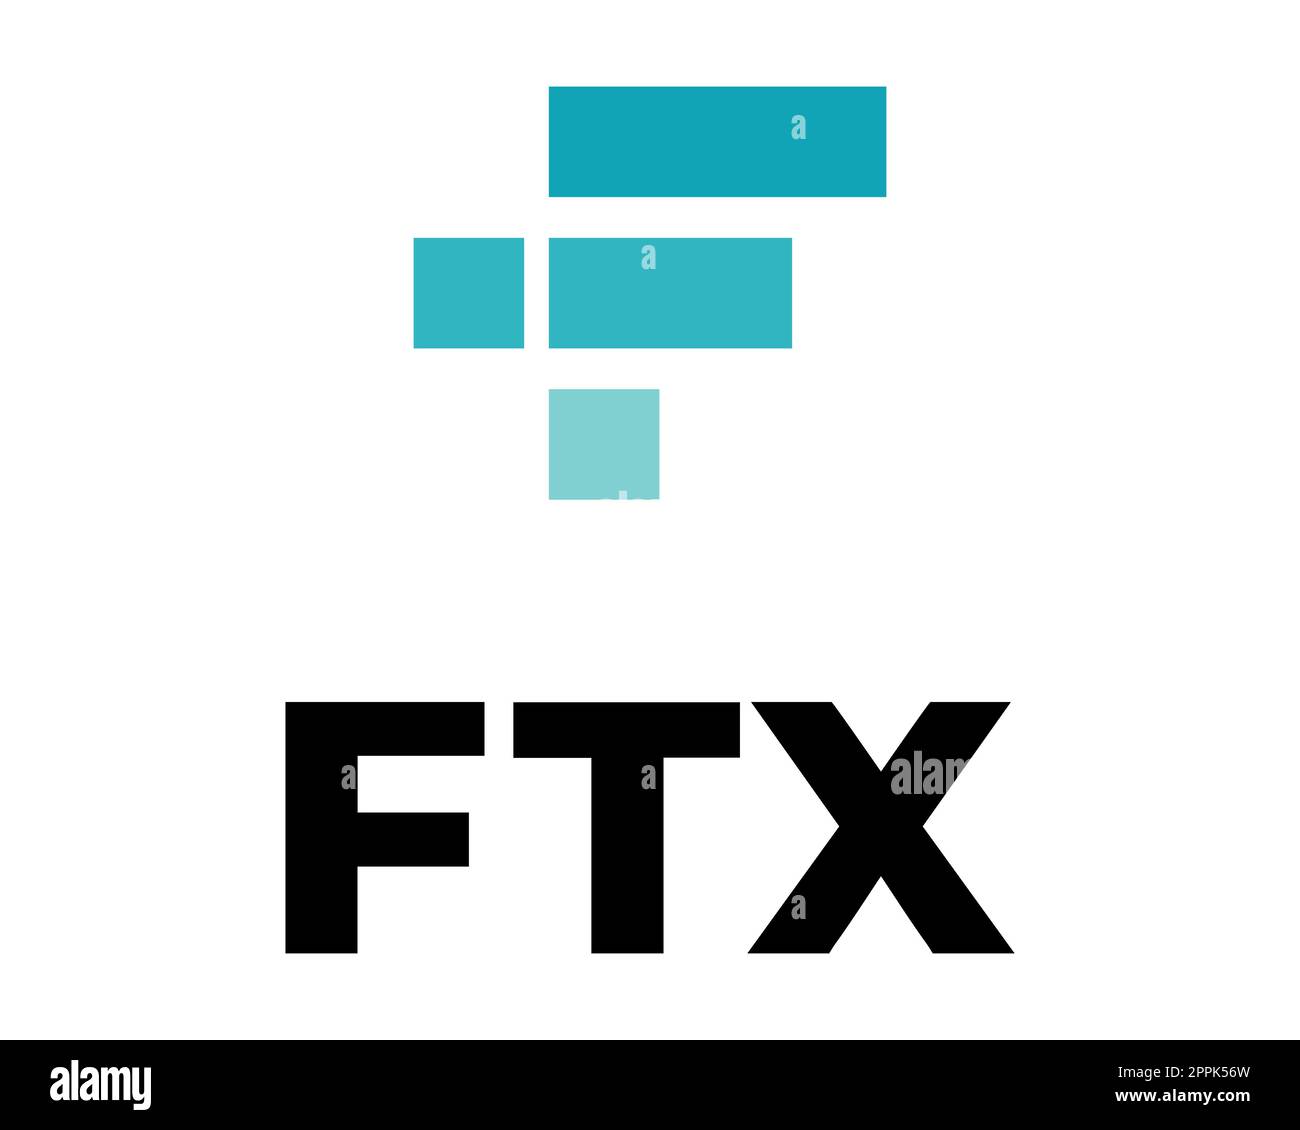 FTX Token - l'effondrement de la crypto-bourse. Logo de crypto-monnaie symbole FTT avec texte. Icône de pièce isolée sur fond blanc. Illustration vectorielle. Banque D'Images